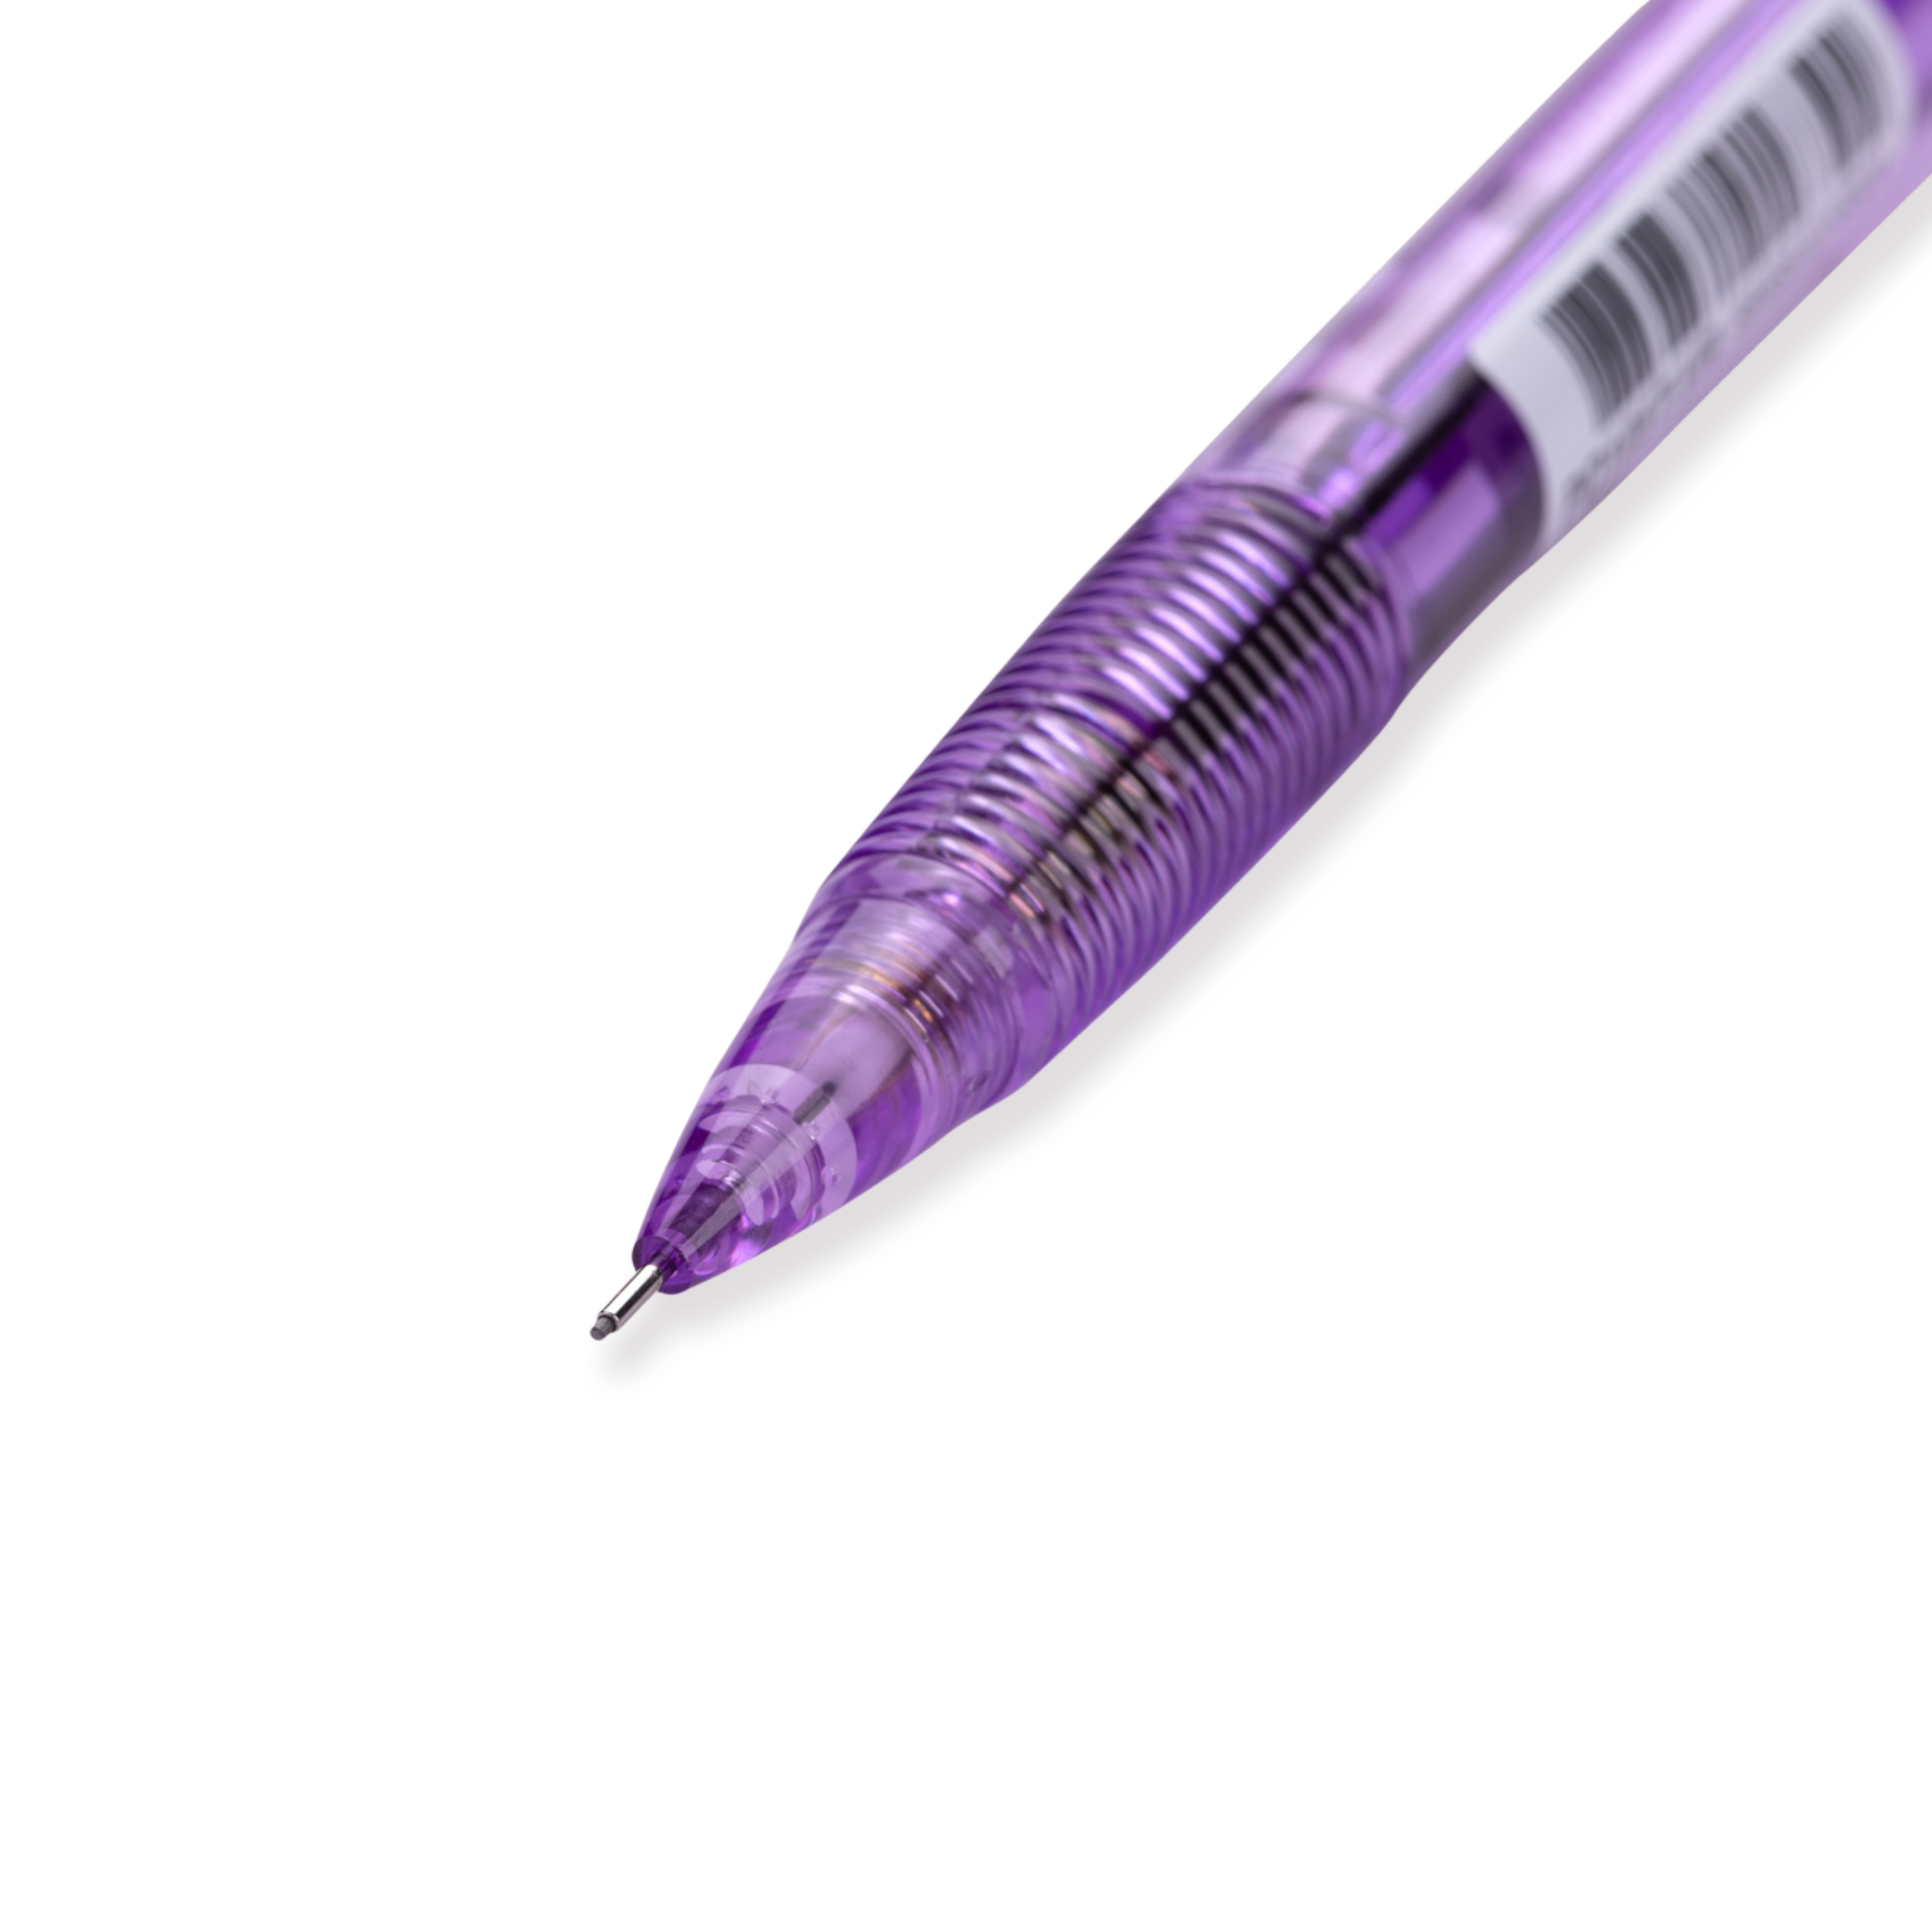 Pentel Techniclick Druckbleistift mit seitlichem Klick, 0,5 mm, Violett